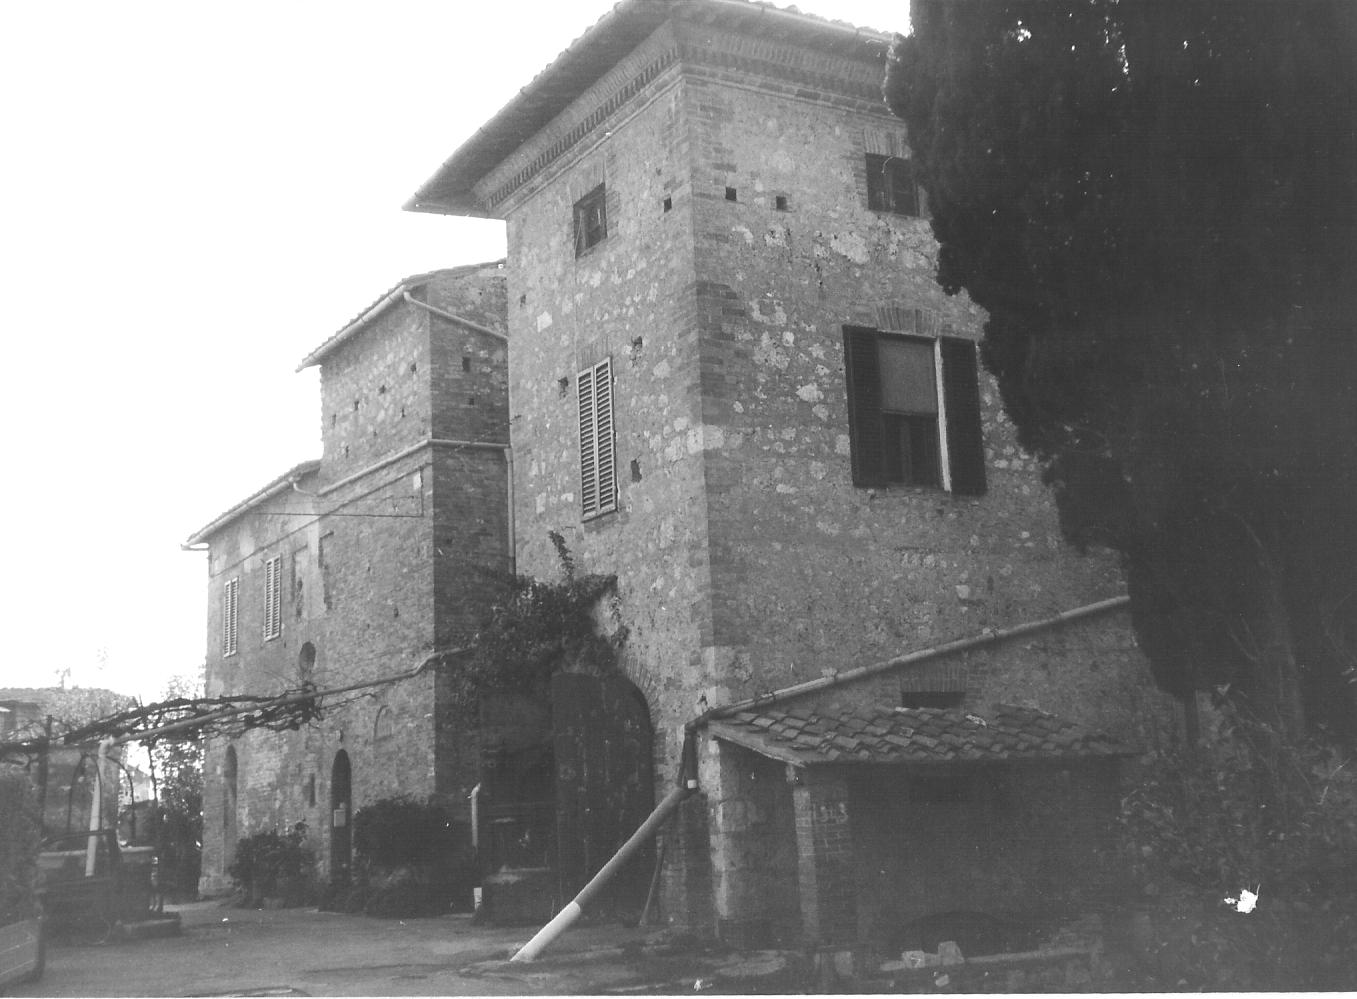 Podere Tortuca (casa rurale, podere) - Siena (SI)  (XIX, prima metà)